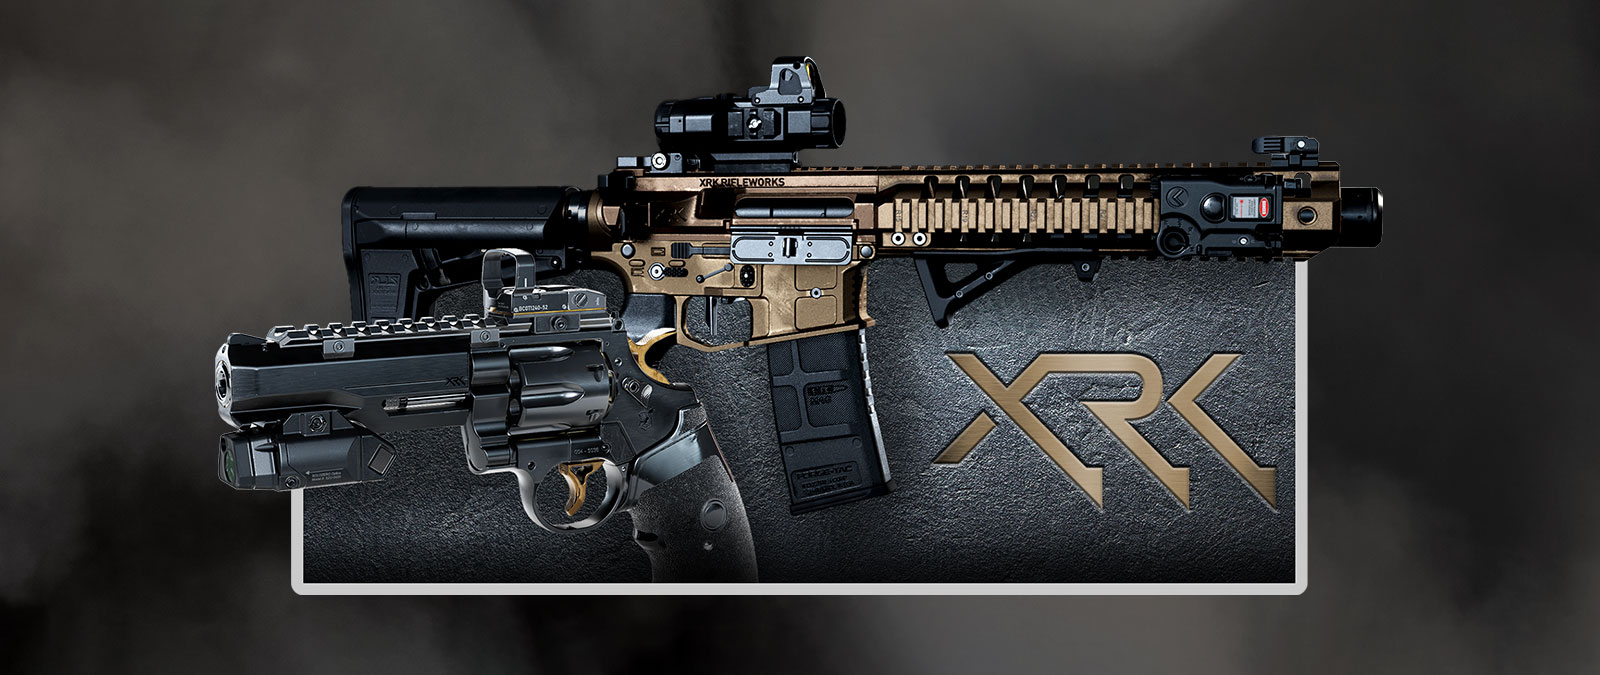 Вид с боку на два пистолета, расположенные в верхней части на текстурированном фоне, и логотип XRK